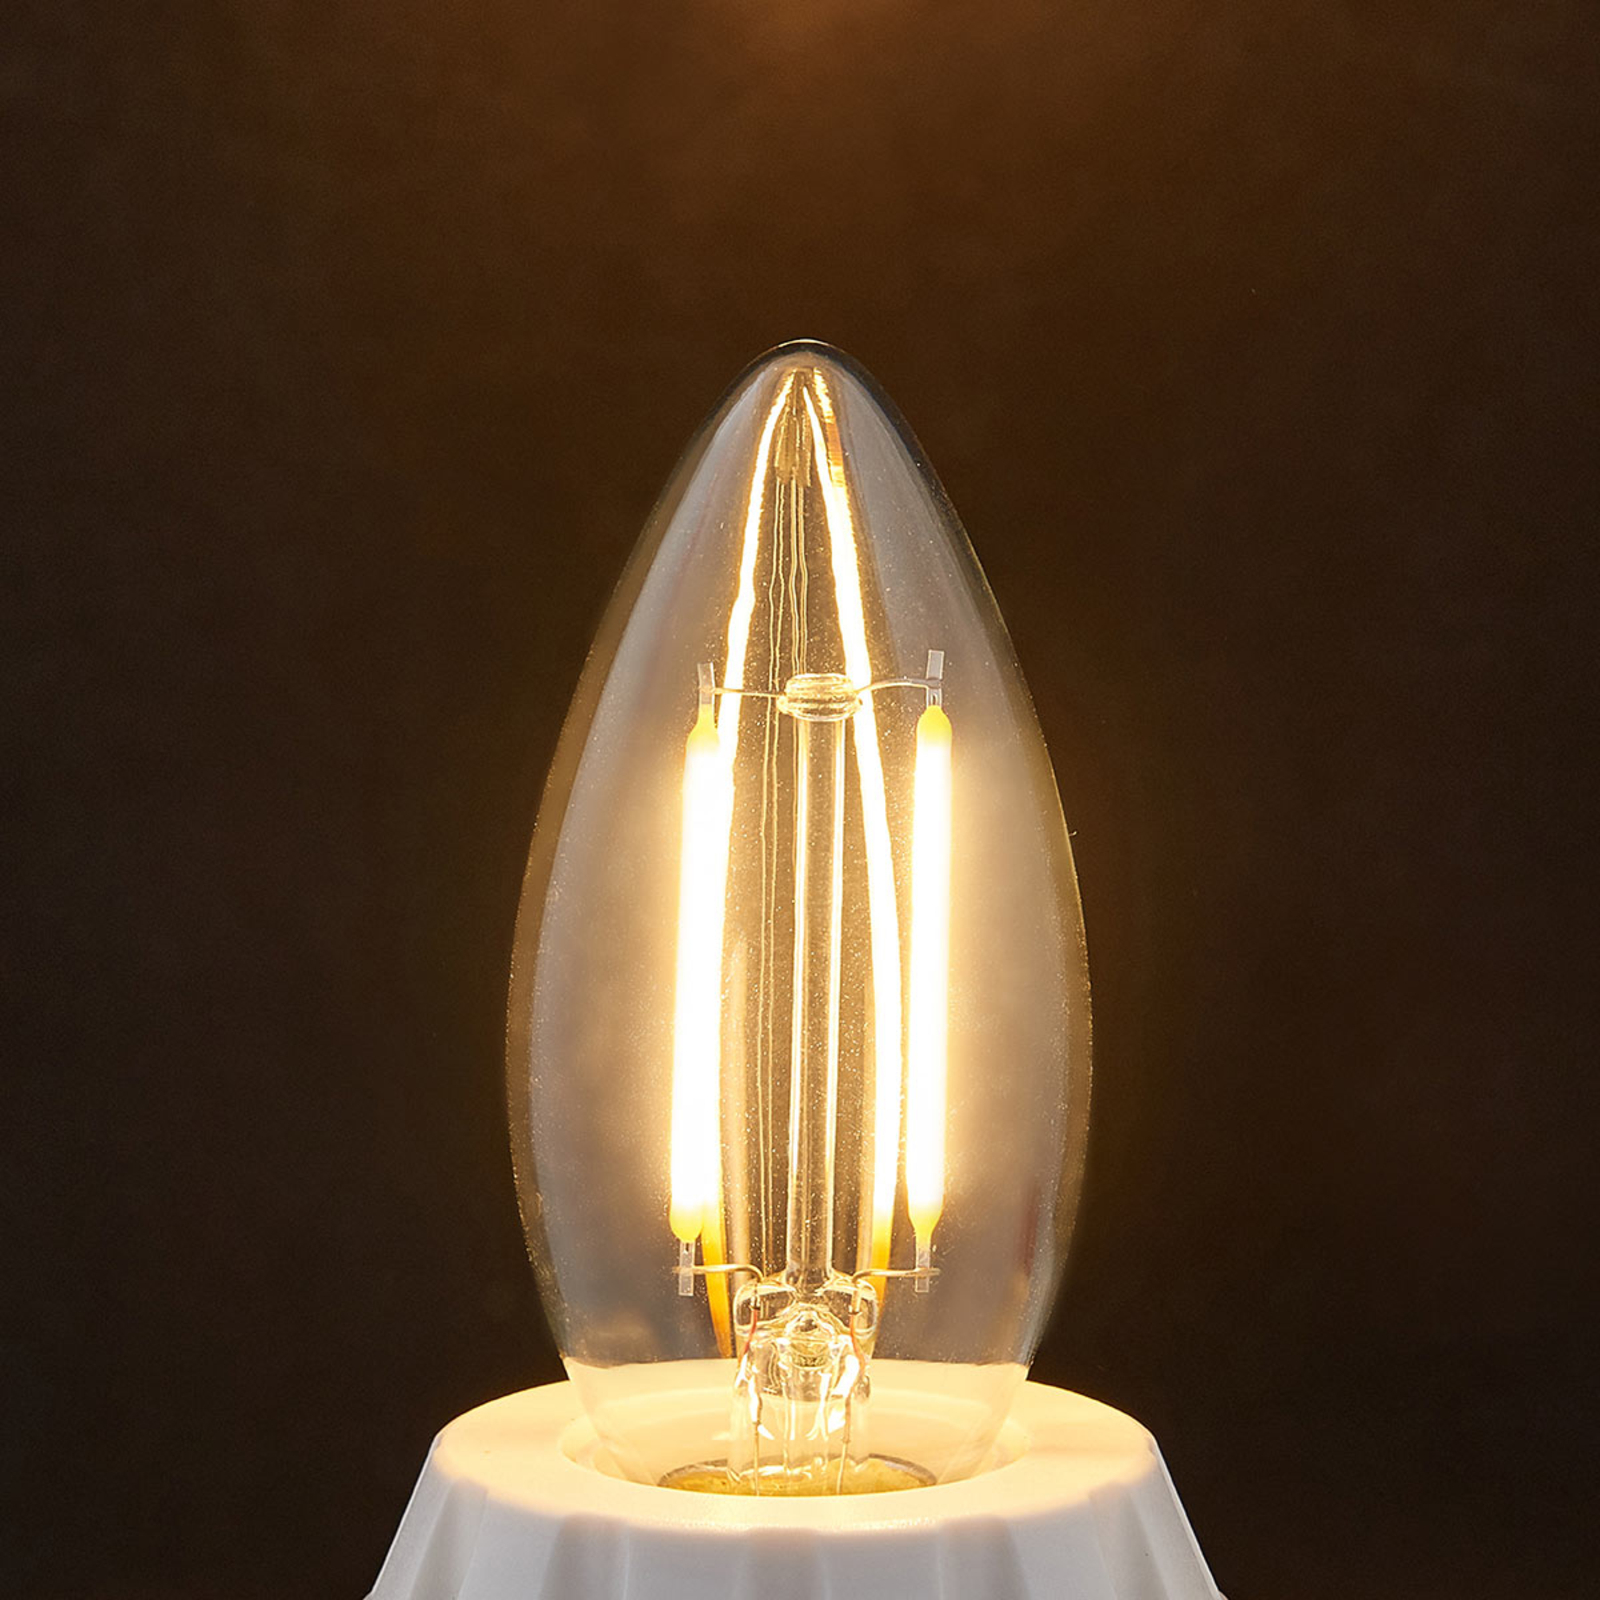 E14 LED kaarslamp gloeidraad 2W, helder, 2700 K